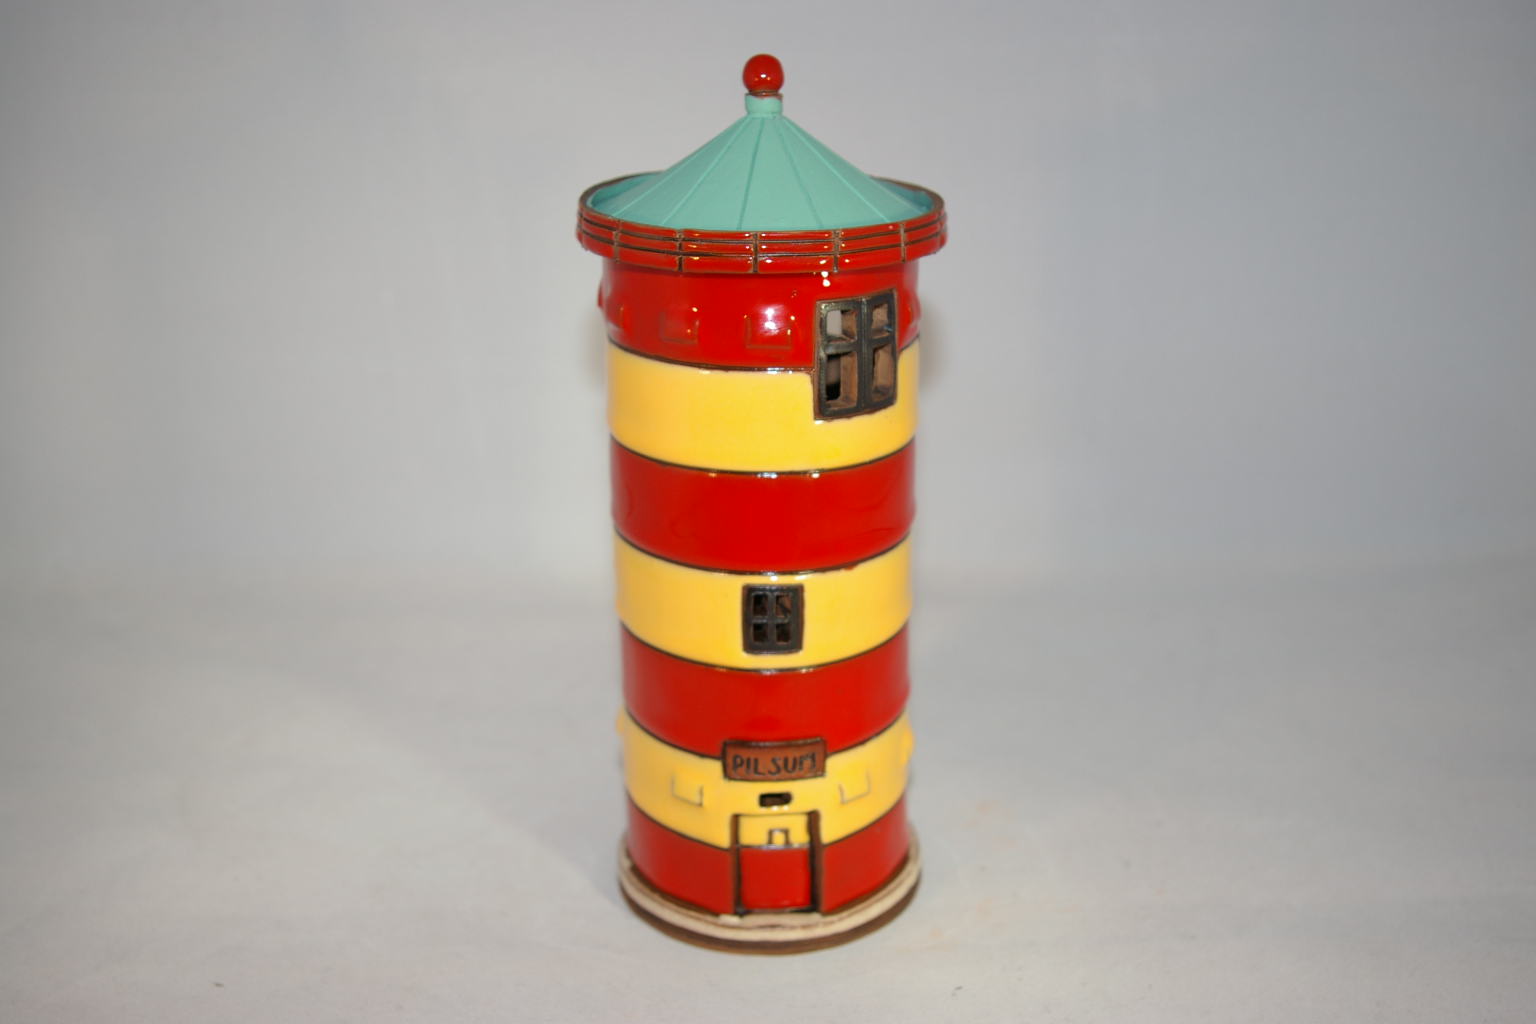 Leuchtturm Pilsum als Teelichtalter ca 20 x Ø 8 cm Keramik